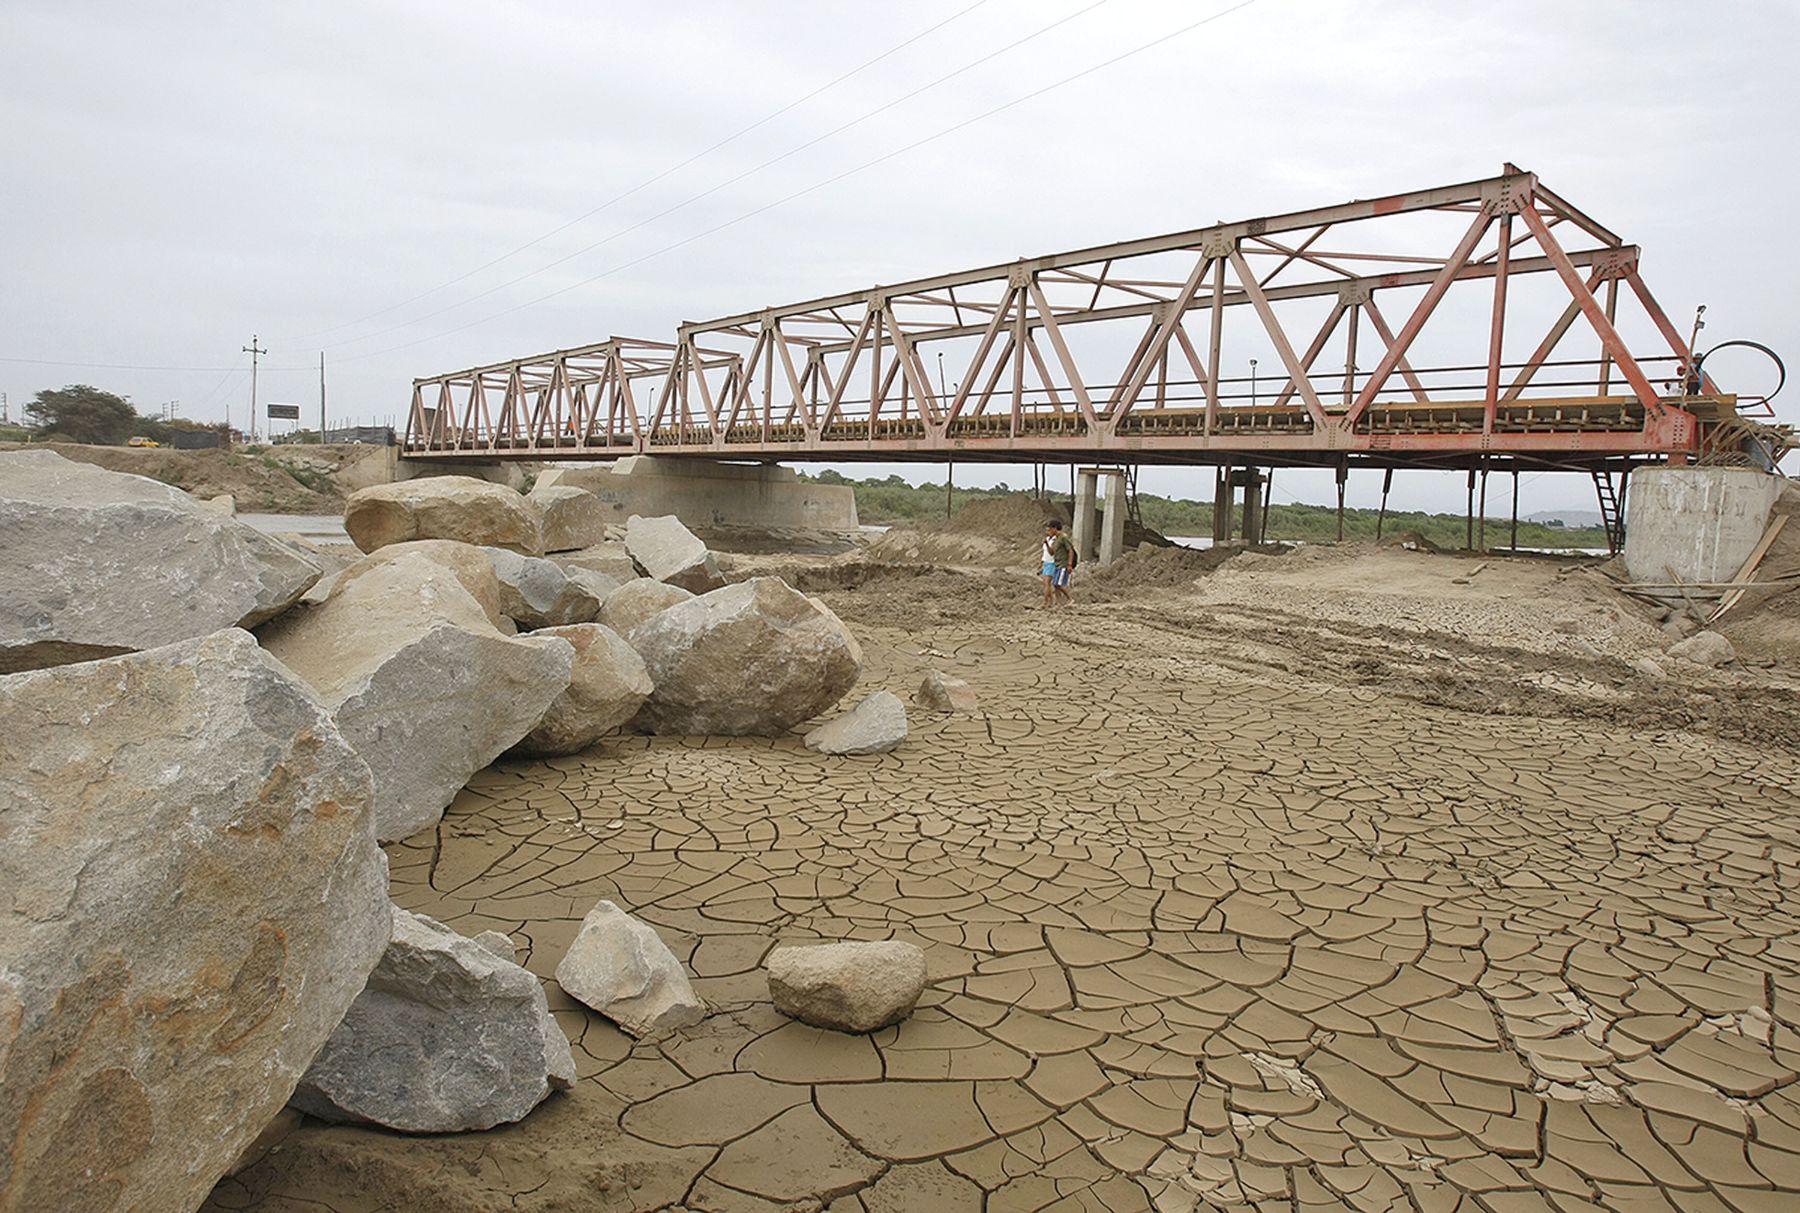  Declaran estado de emergencia por 60 días en sur de Perú por sequía